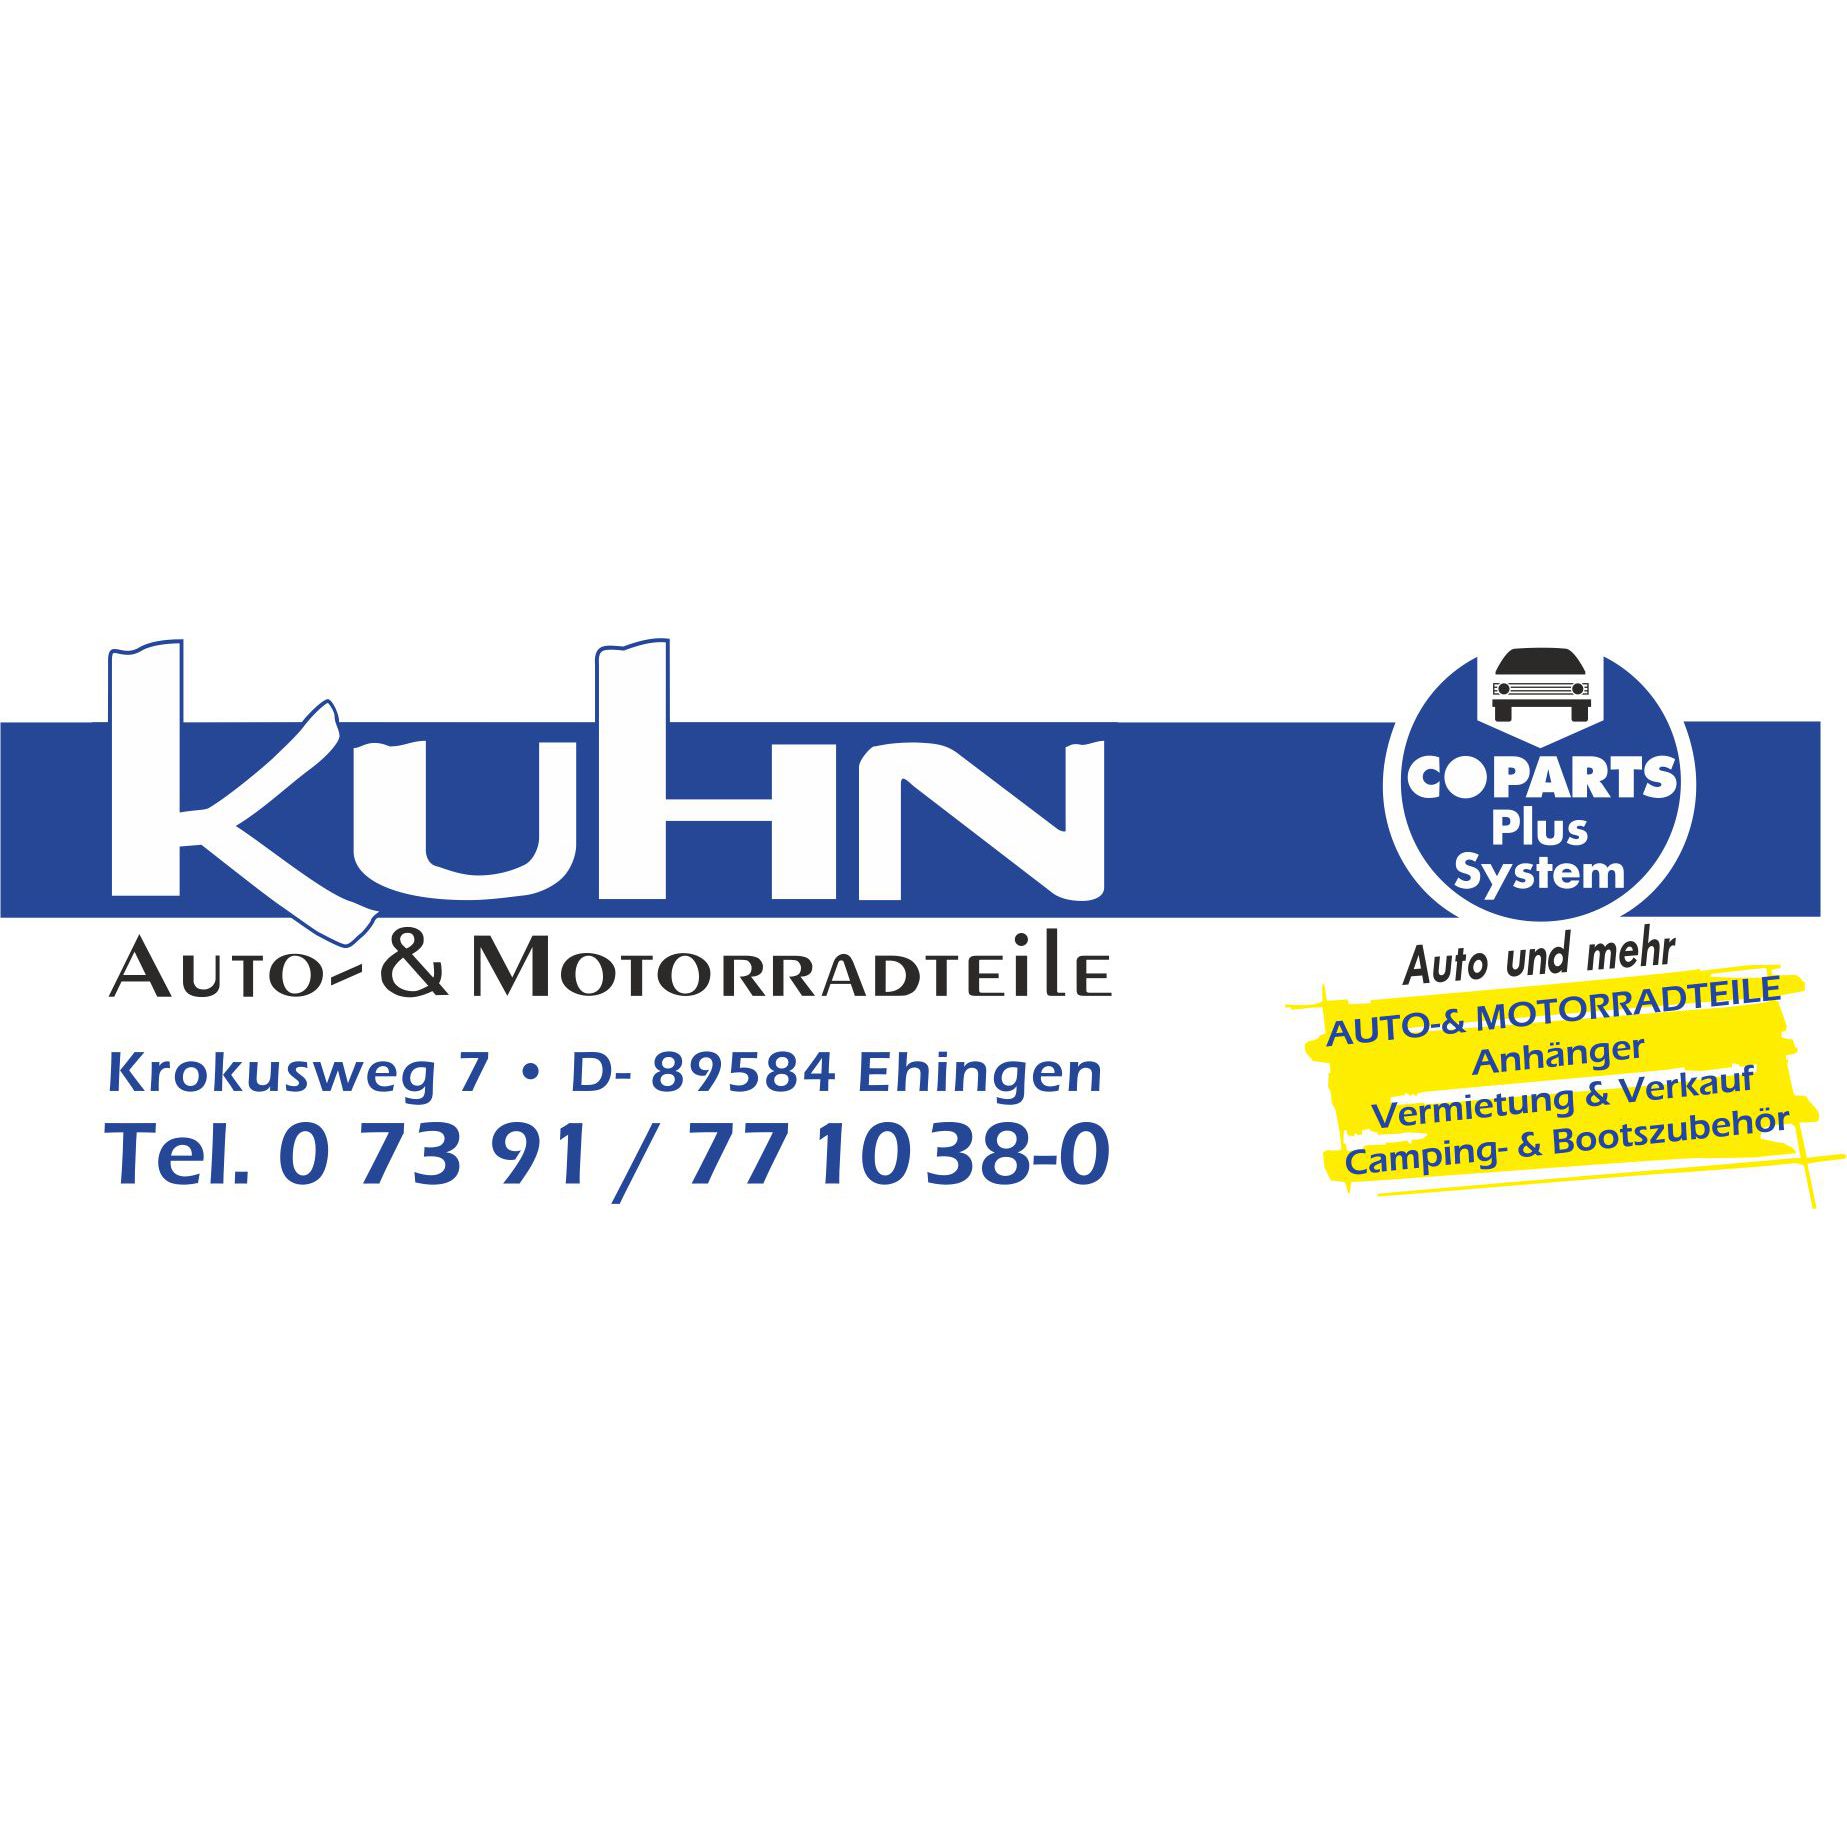 Auto- & Motorradteile Kuhn  